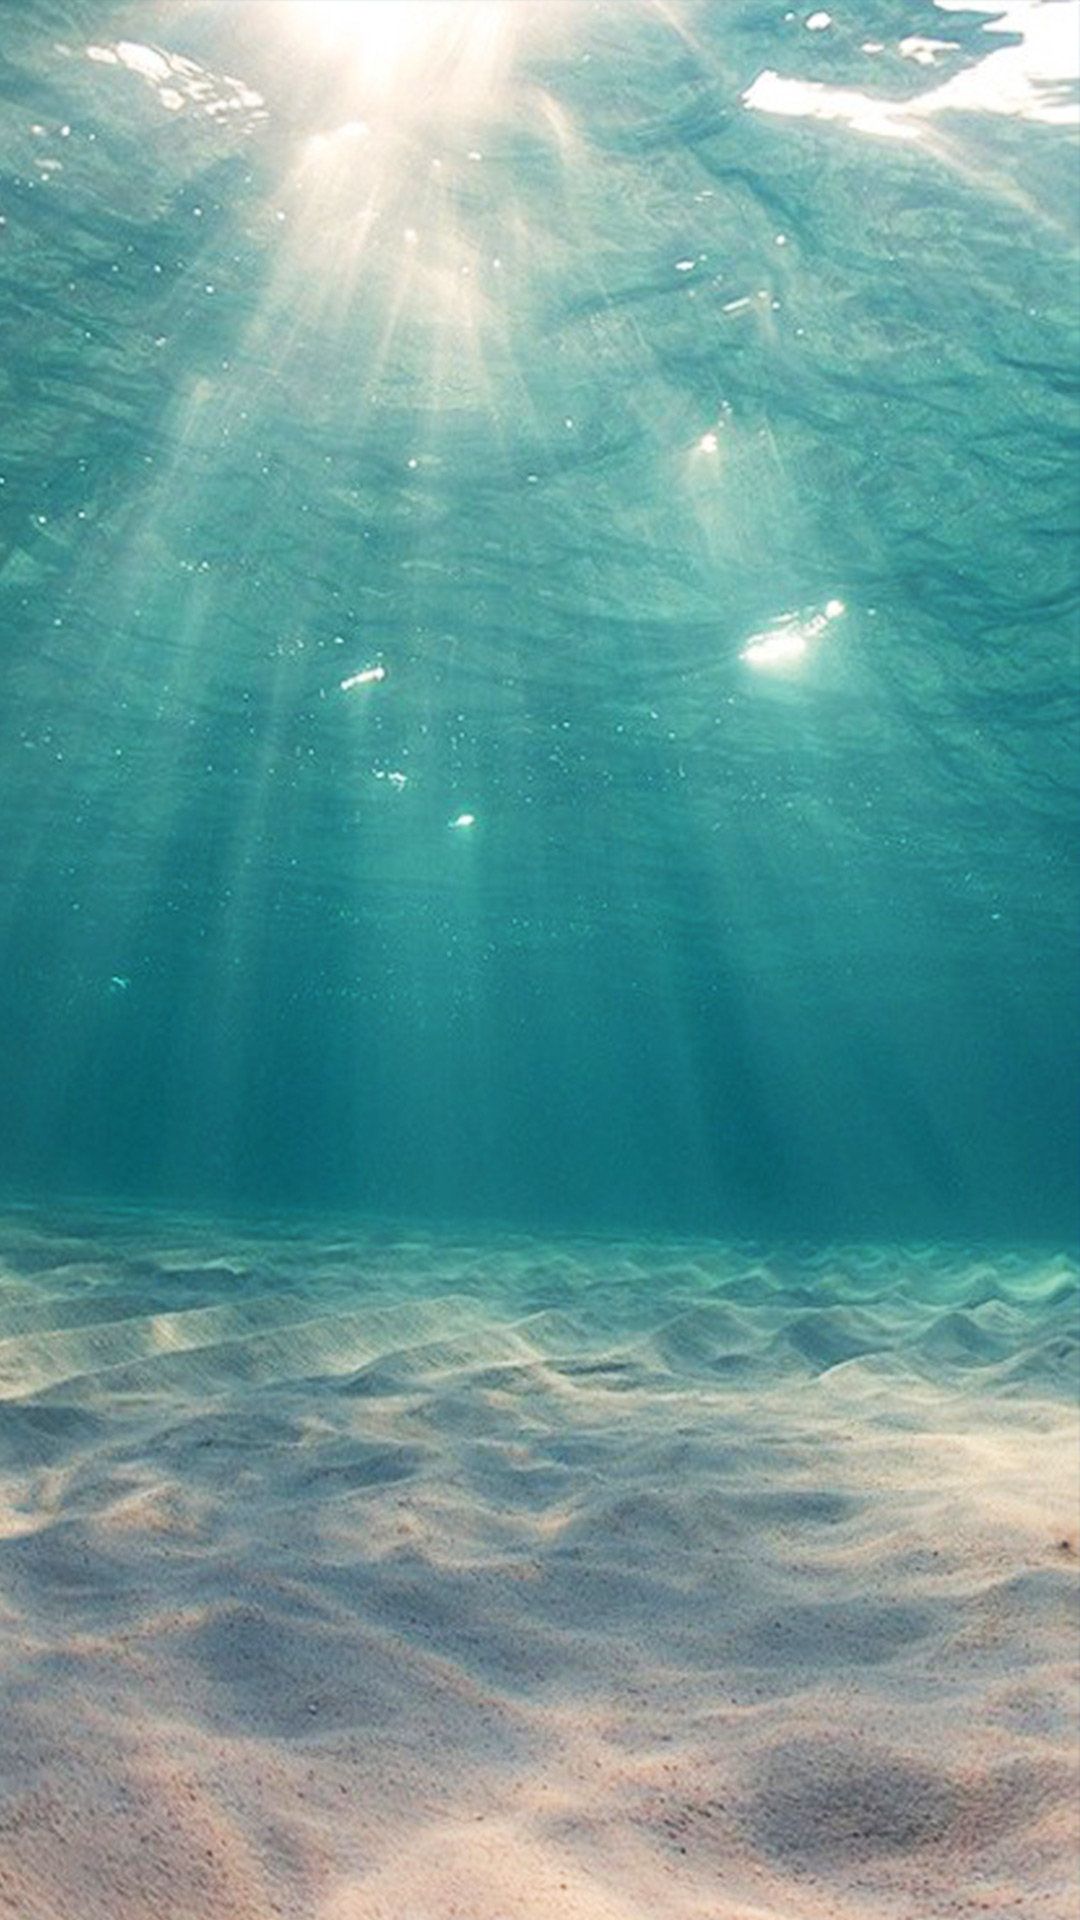 Hình nền sóng biển cho iPhone siêu đẹp, giúp bạn có cảm giác yên bình